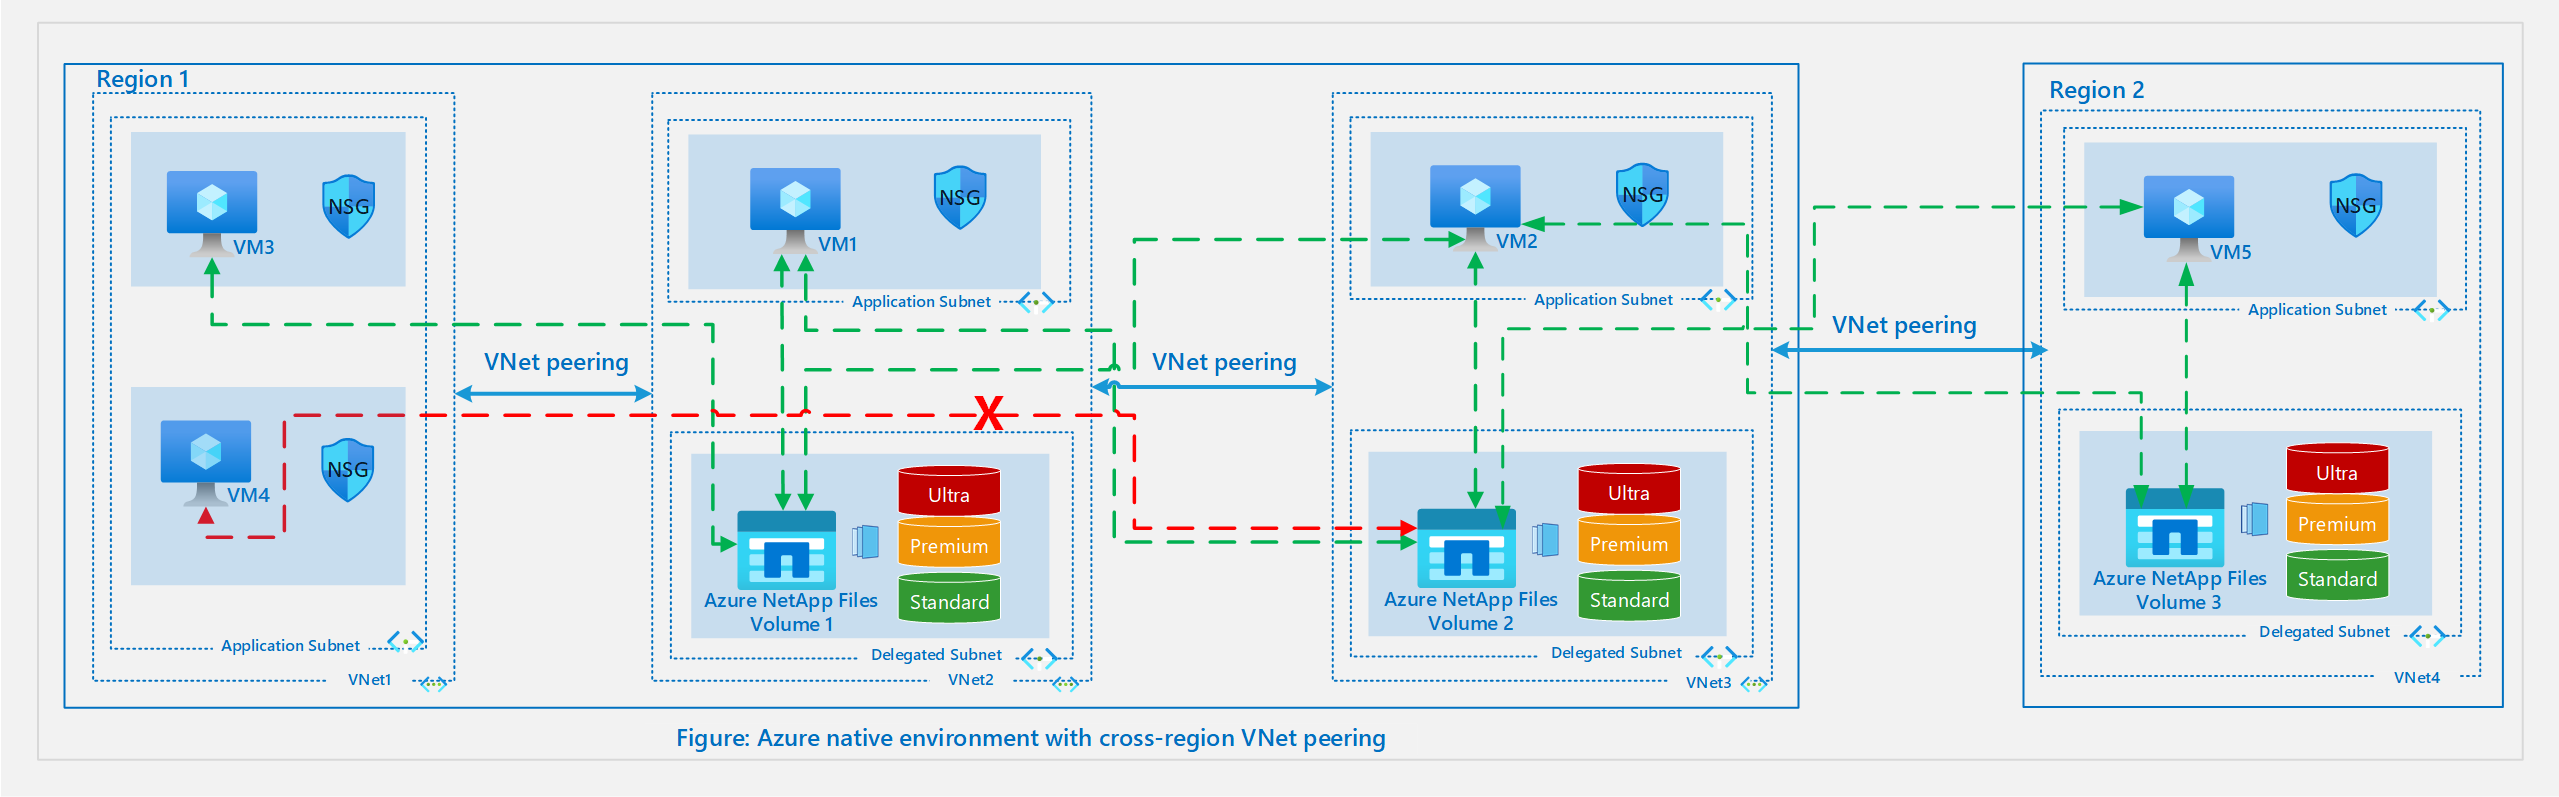 Diagramm: Einrichtung der nativen Azure-Umgebung mit regionsübergreifendem VNet-Peering